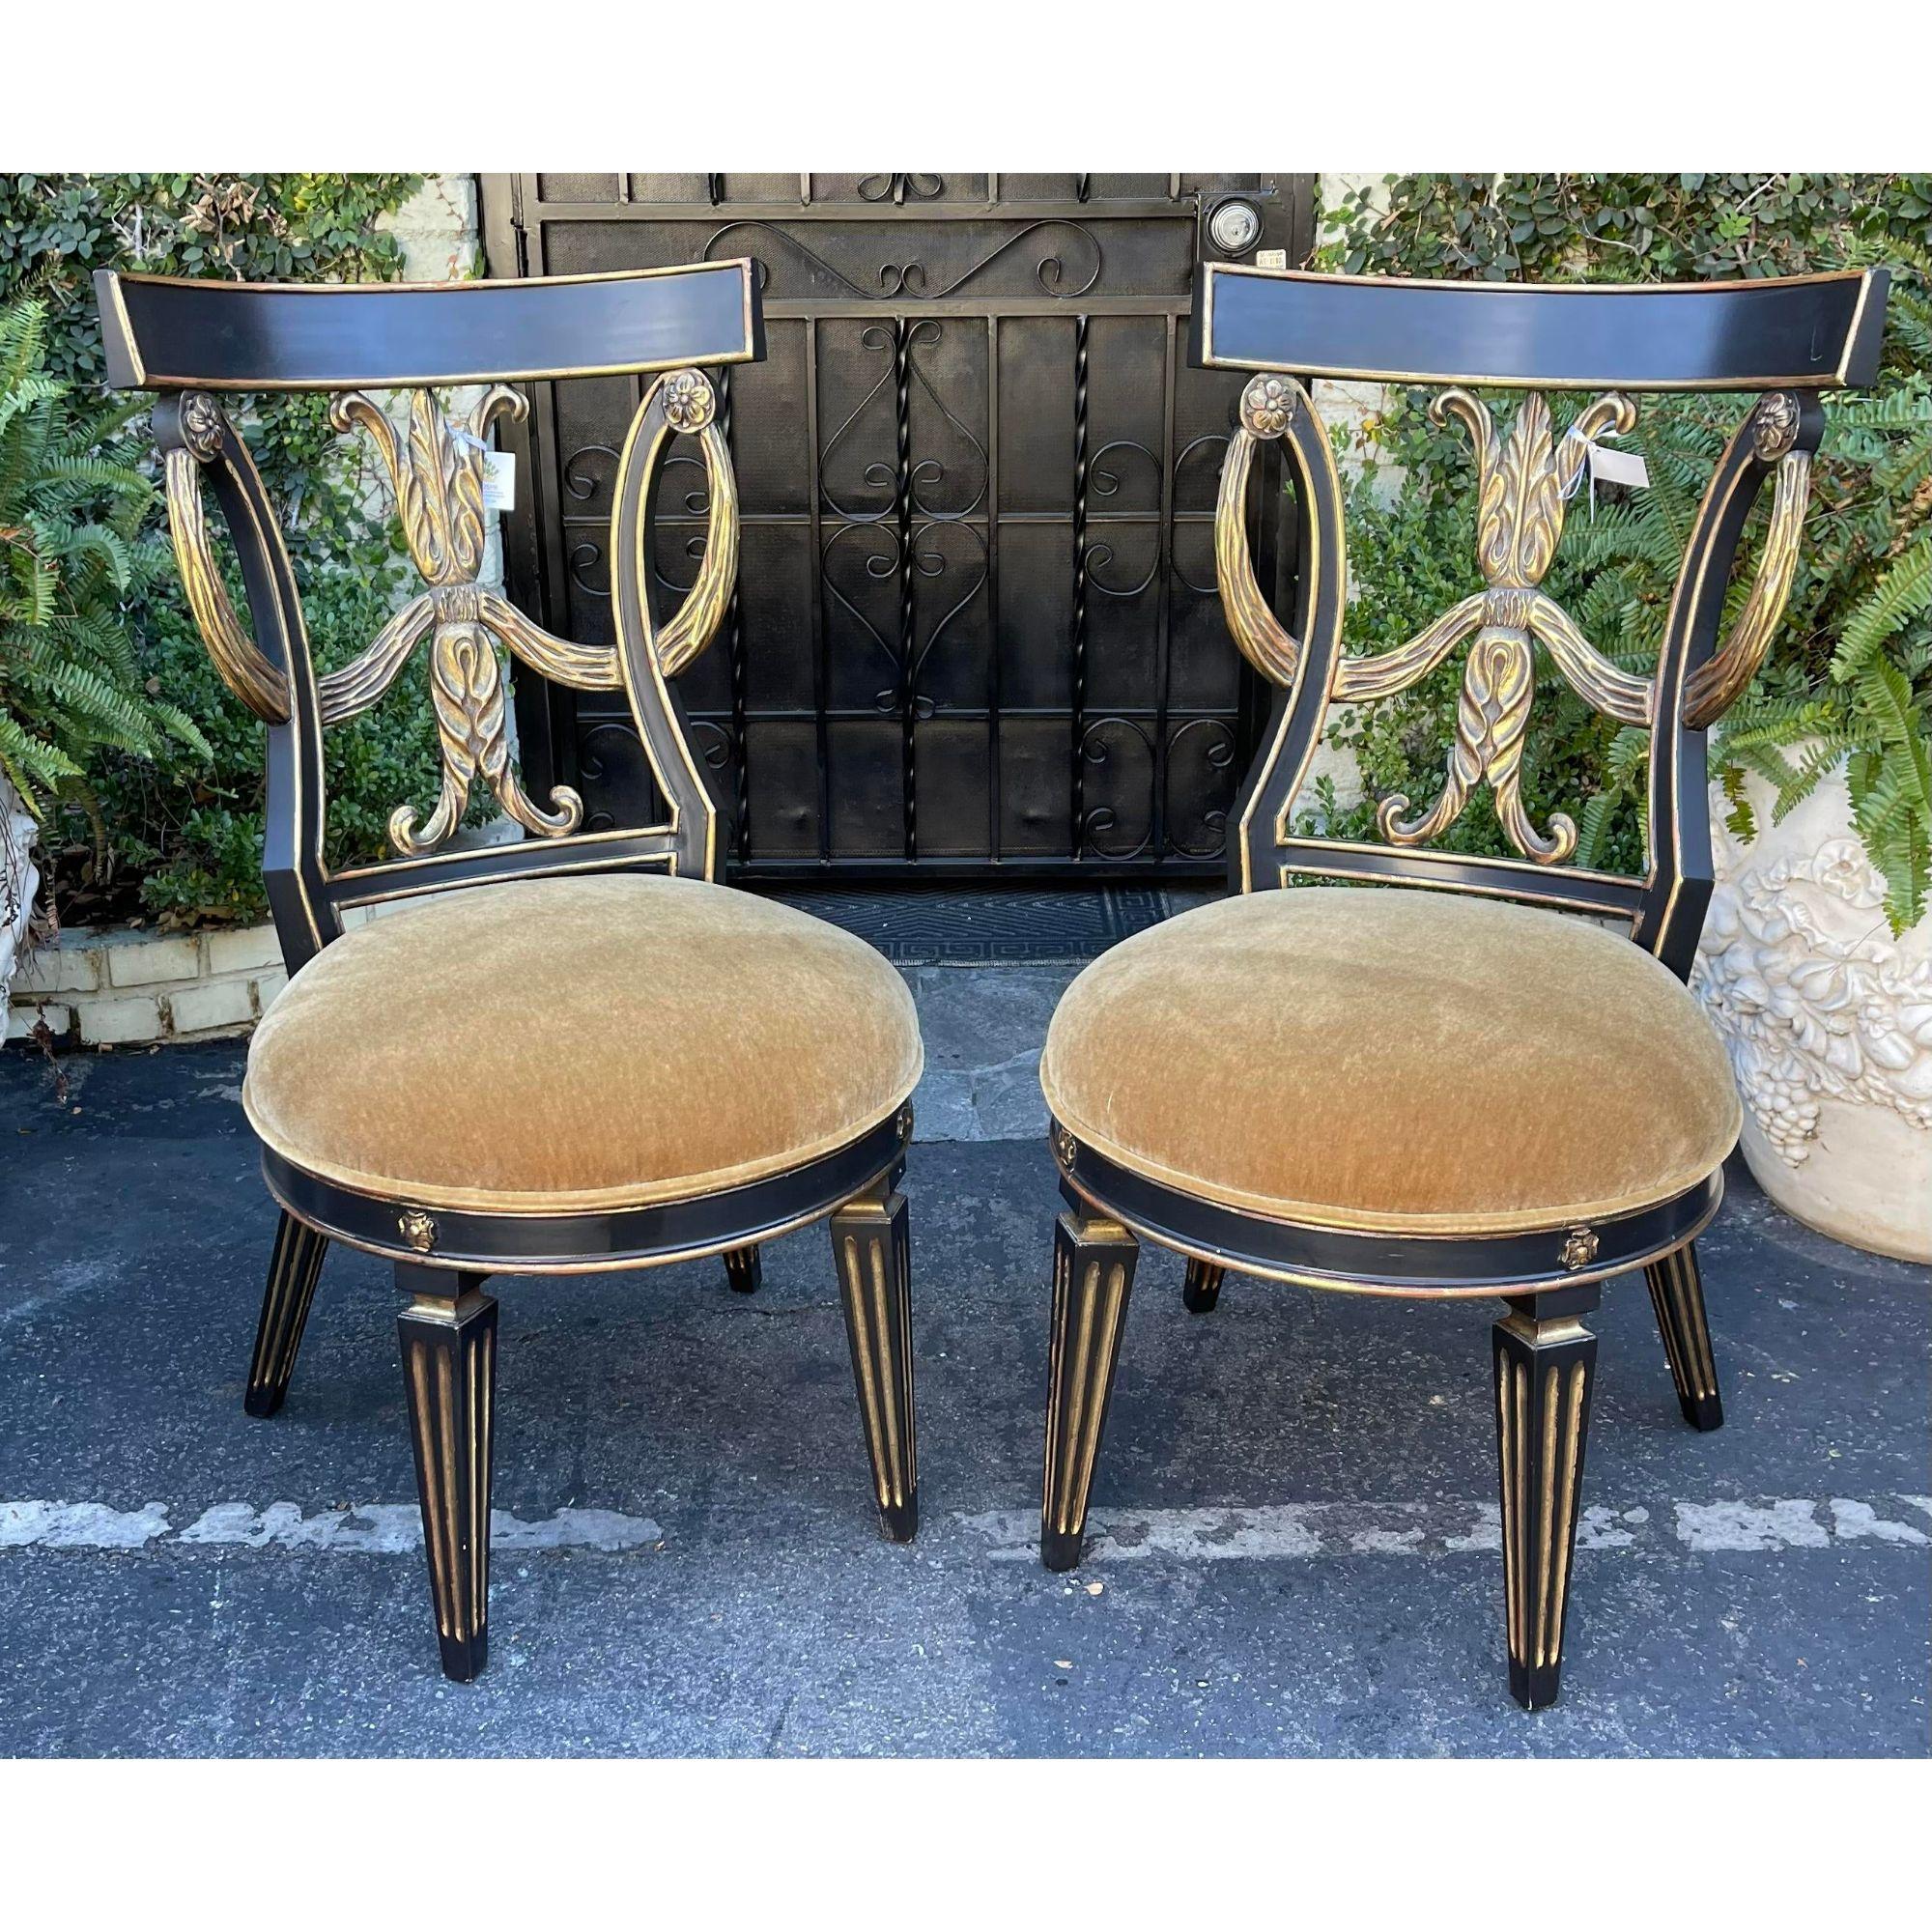 Ein Paar Stühle aus Giltwood und Mohair im Regency-Stil von Randy Esada Designs für PROSPR. Sie sind mit dicken Mohair-Sitzen und eleganten Rahmen aus ebonisiertem Goldholz ausgestattet. Vergoldete Vorder- und Rückseite.
Verkauft in Paaren. Zwei